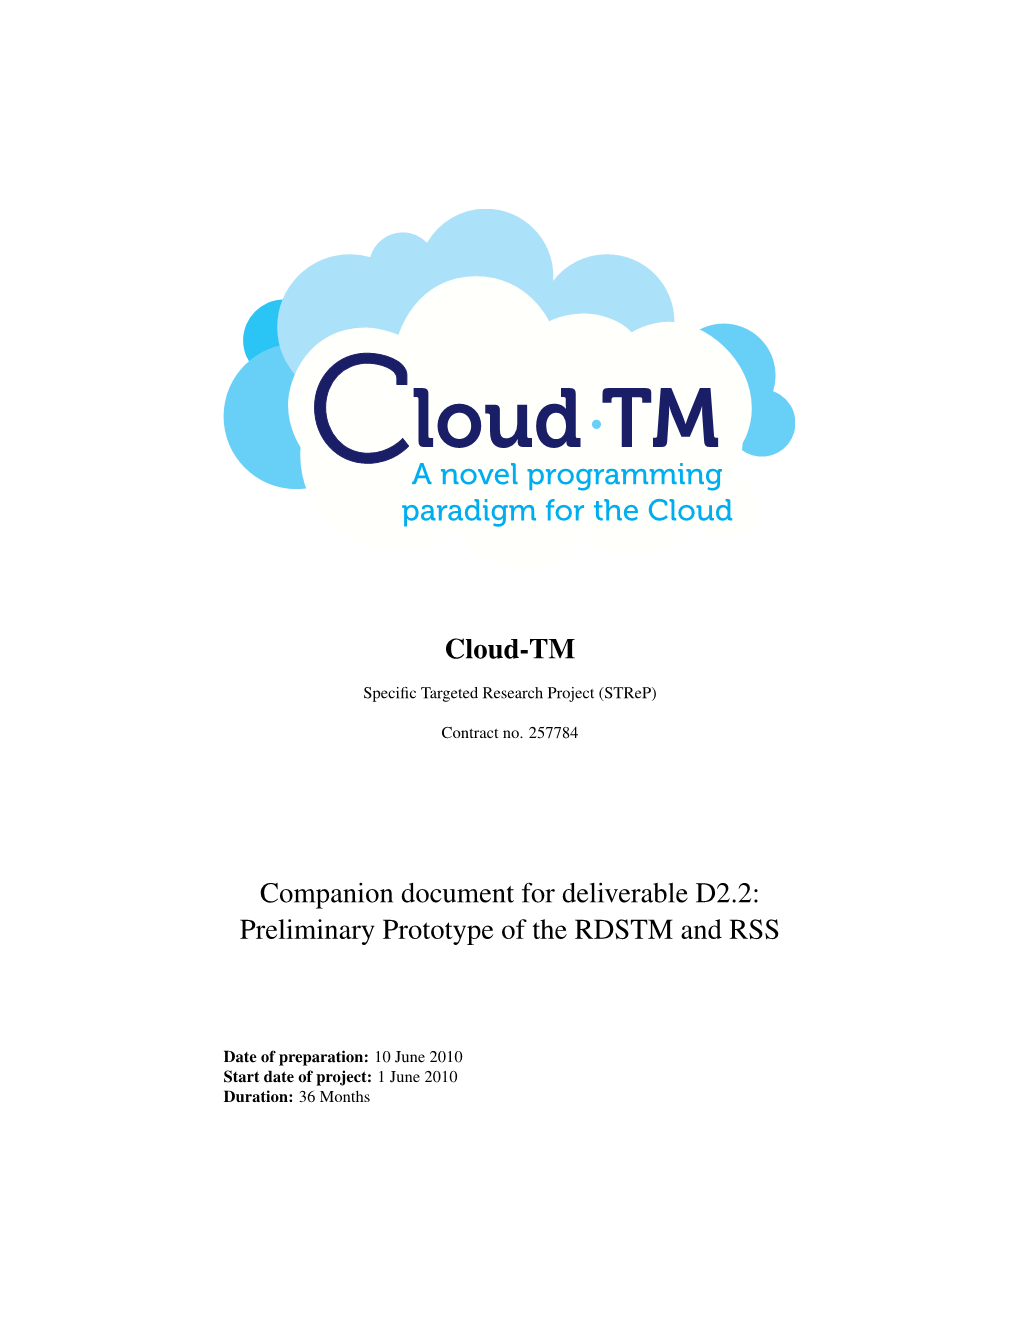 Cloud-TM Companion Document For